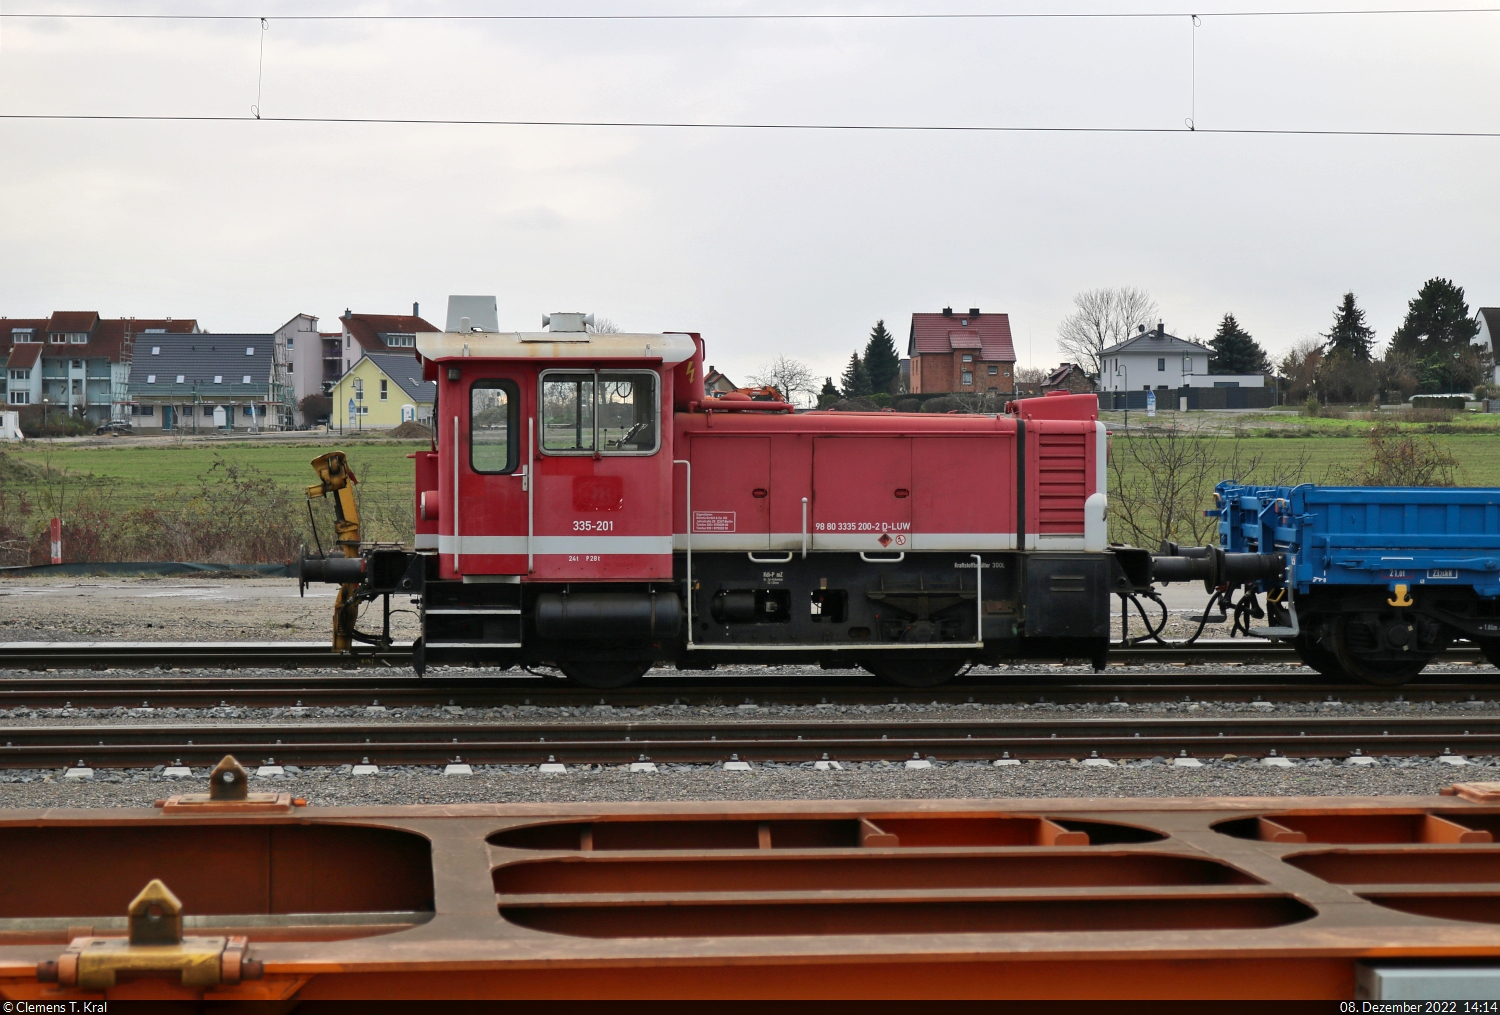 335-201 (333 200-4 | 98 80 3335 200-2 D-LUW) war im Rahmen der ewig währenden Bauarbeiten im Bahnhof Angersdorf abgestellt.
Aufgenommen über Containertragwagen hinweg vom Bahnsteig 2/3.

🧰 Behefa GmbH & Co. KG
🕓 8.12.2022 | 14:14 Uhr